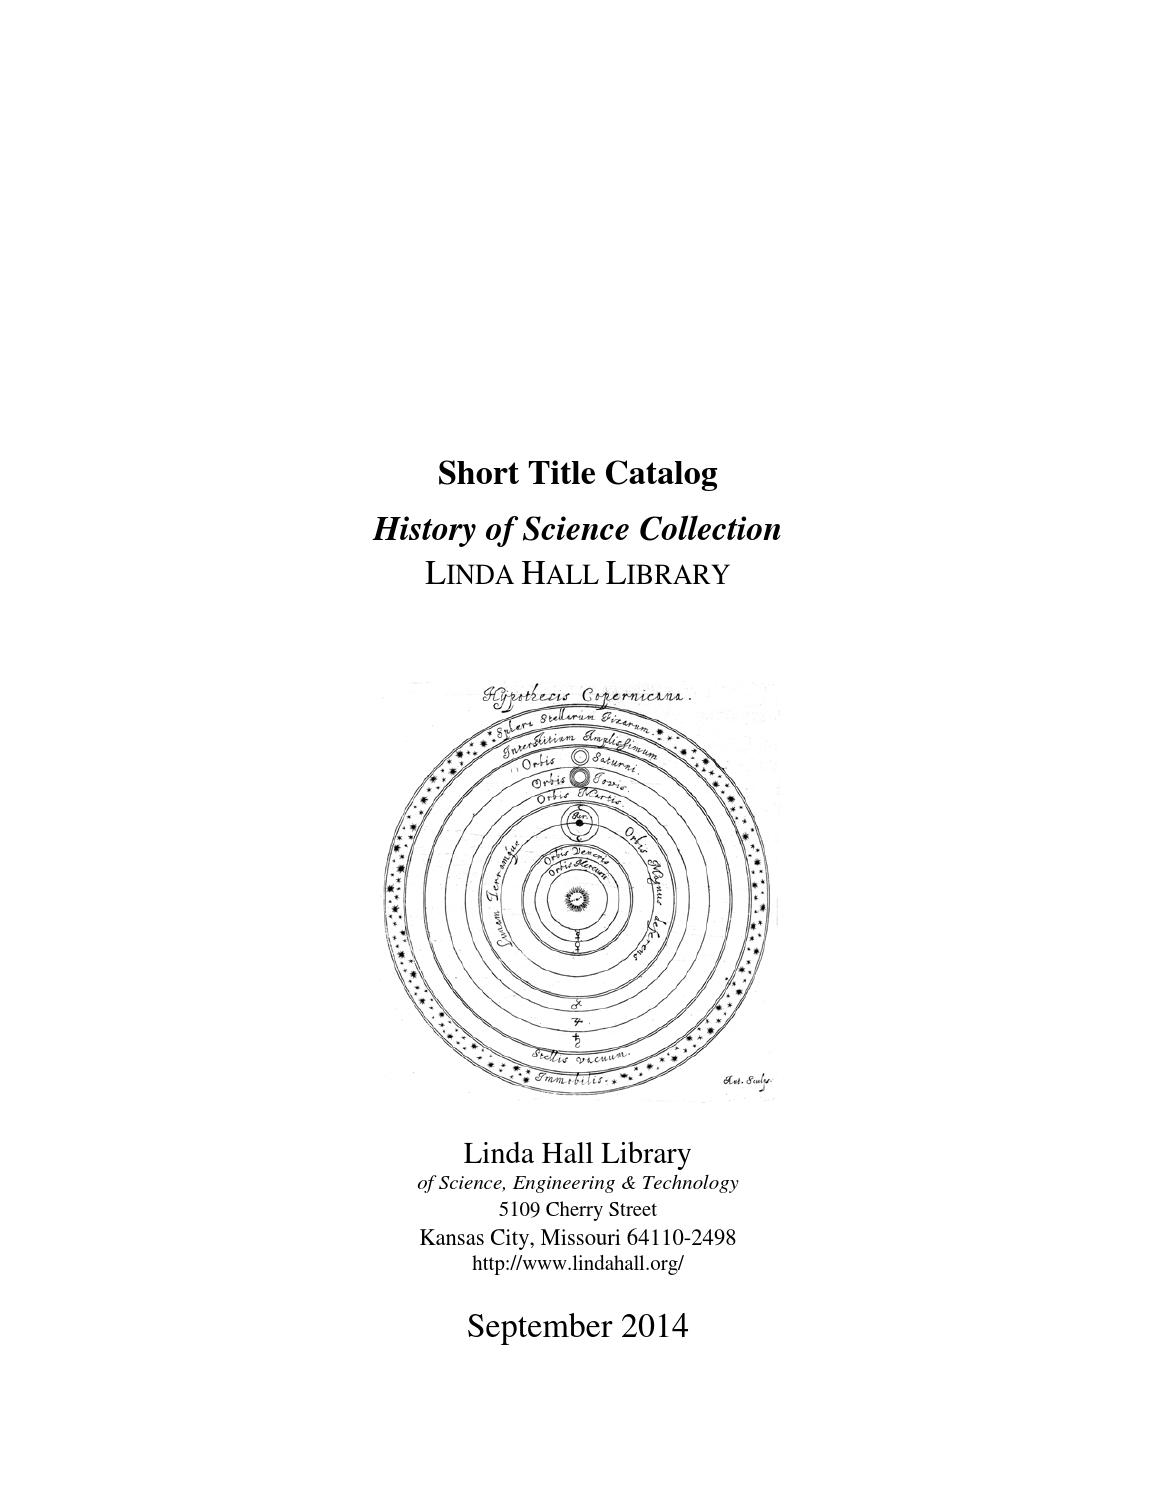 Créer Un Jardin Exotique sous Nos Climats Nouveau History Of Science Collection Stc by Bruce Bradley issuu